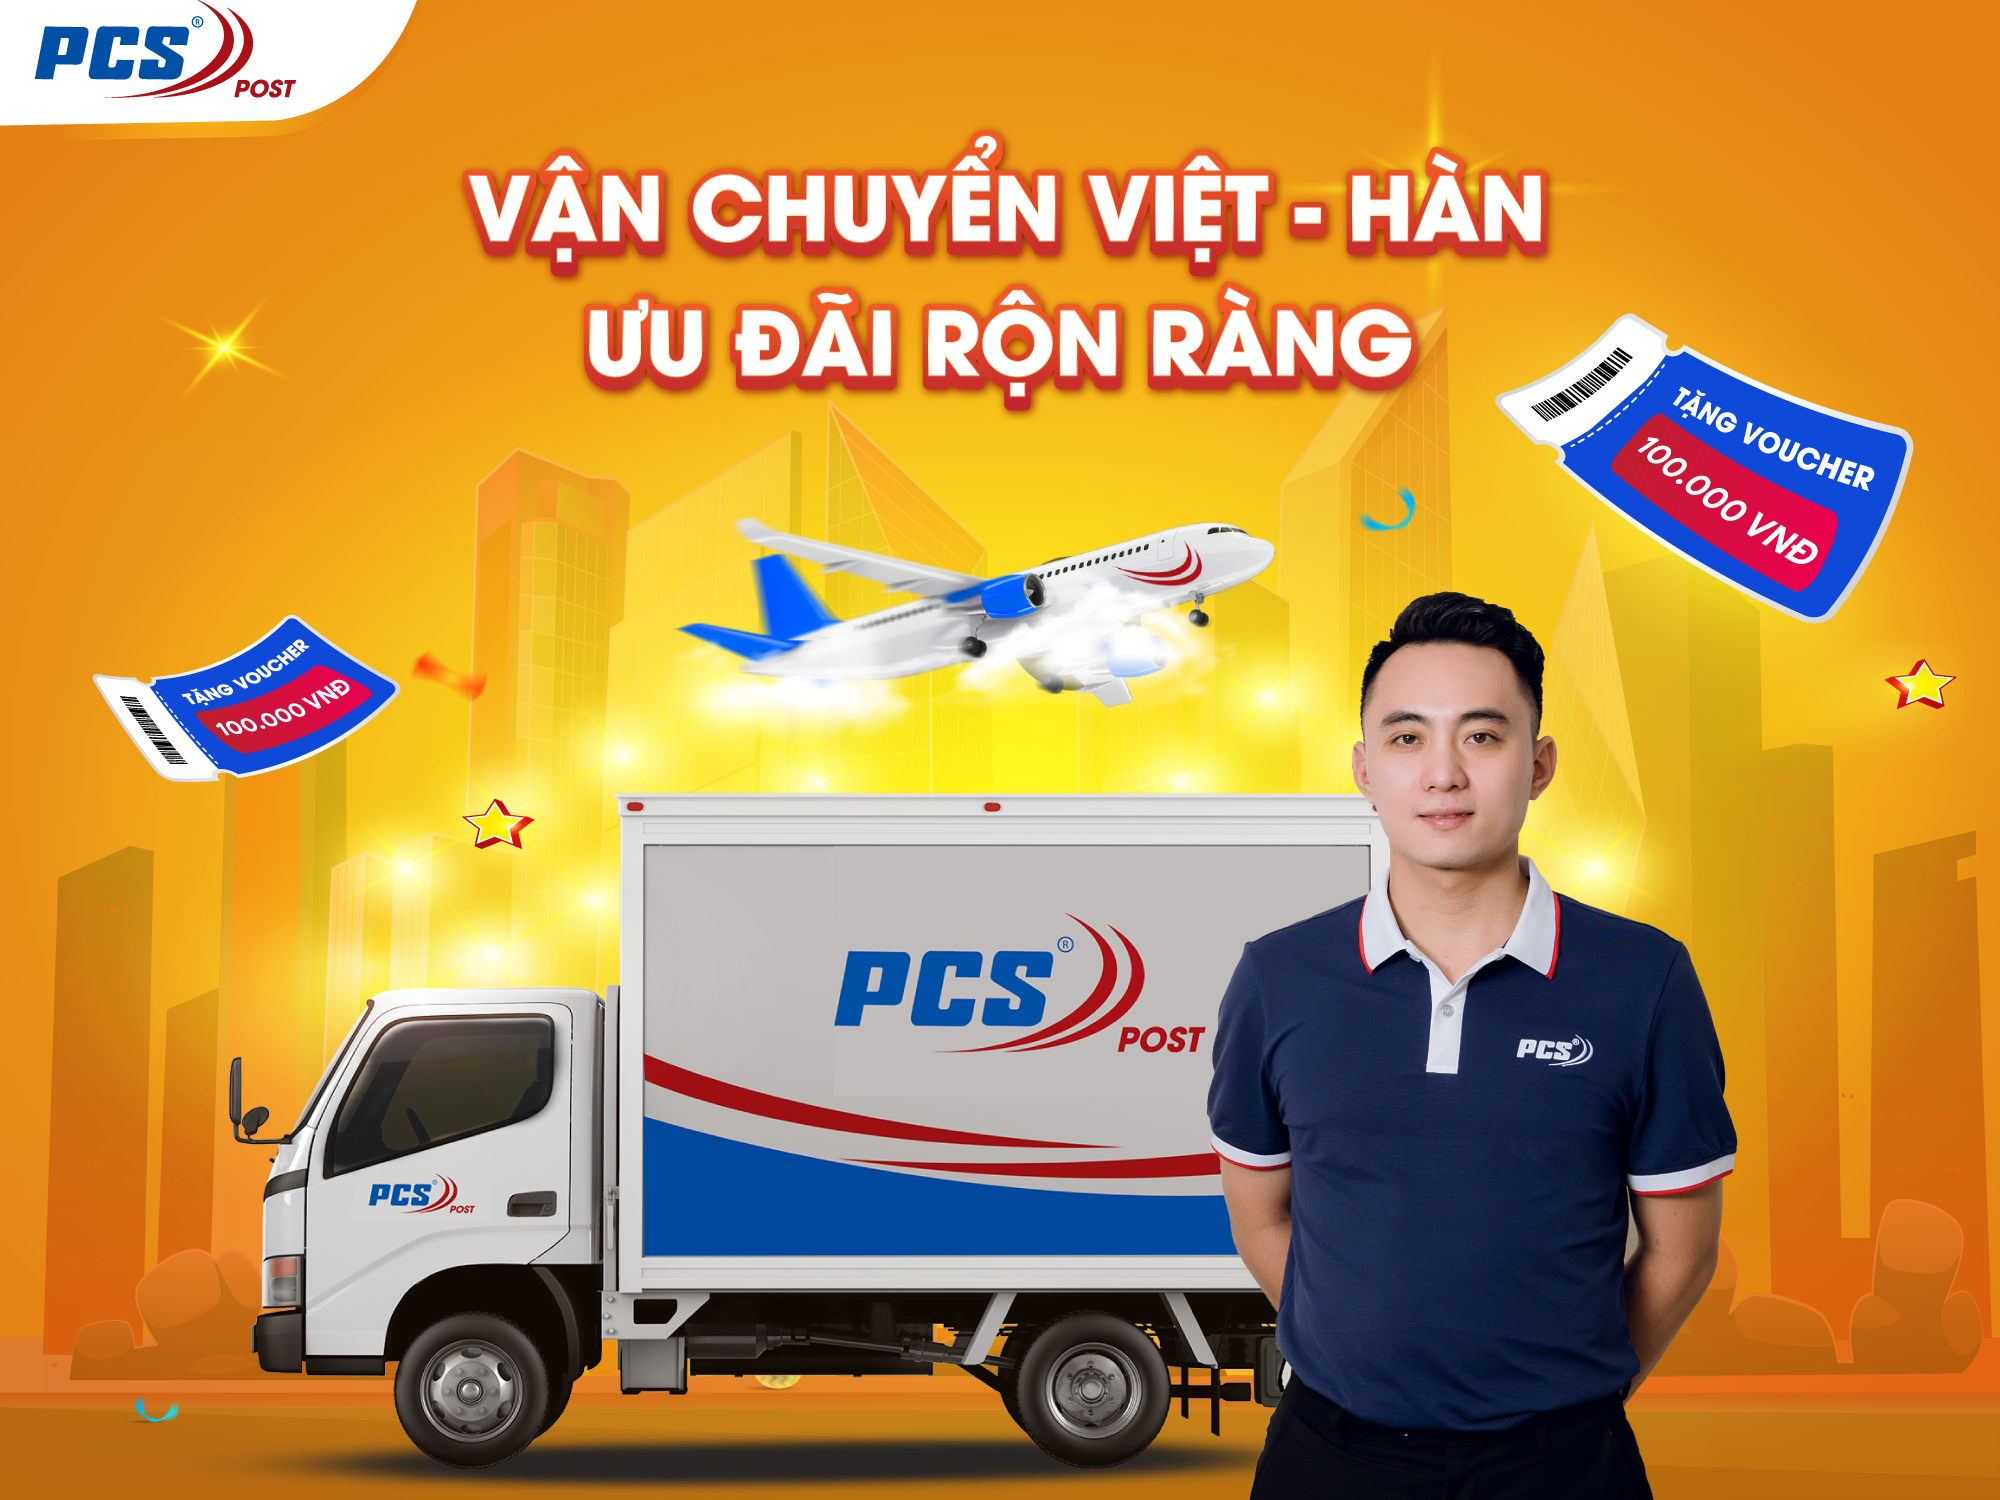 Dịch vụ vận chuyển Việt Hàn đáng tin cậy